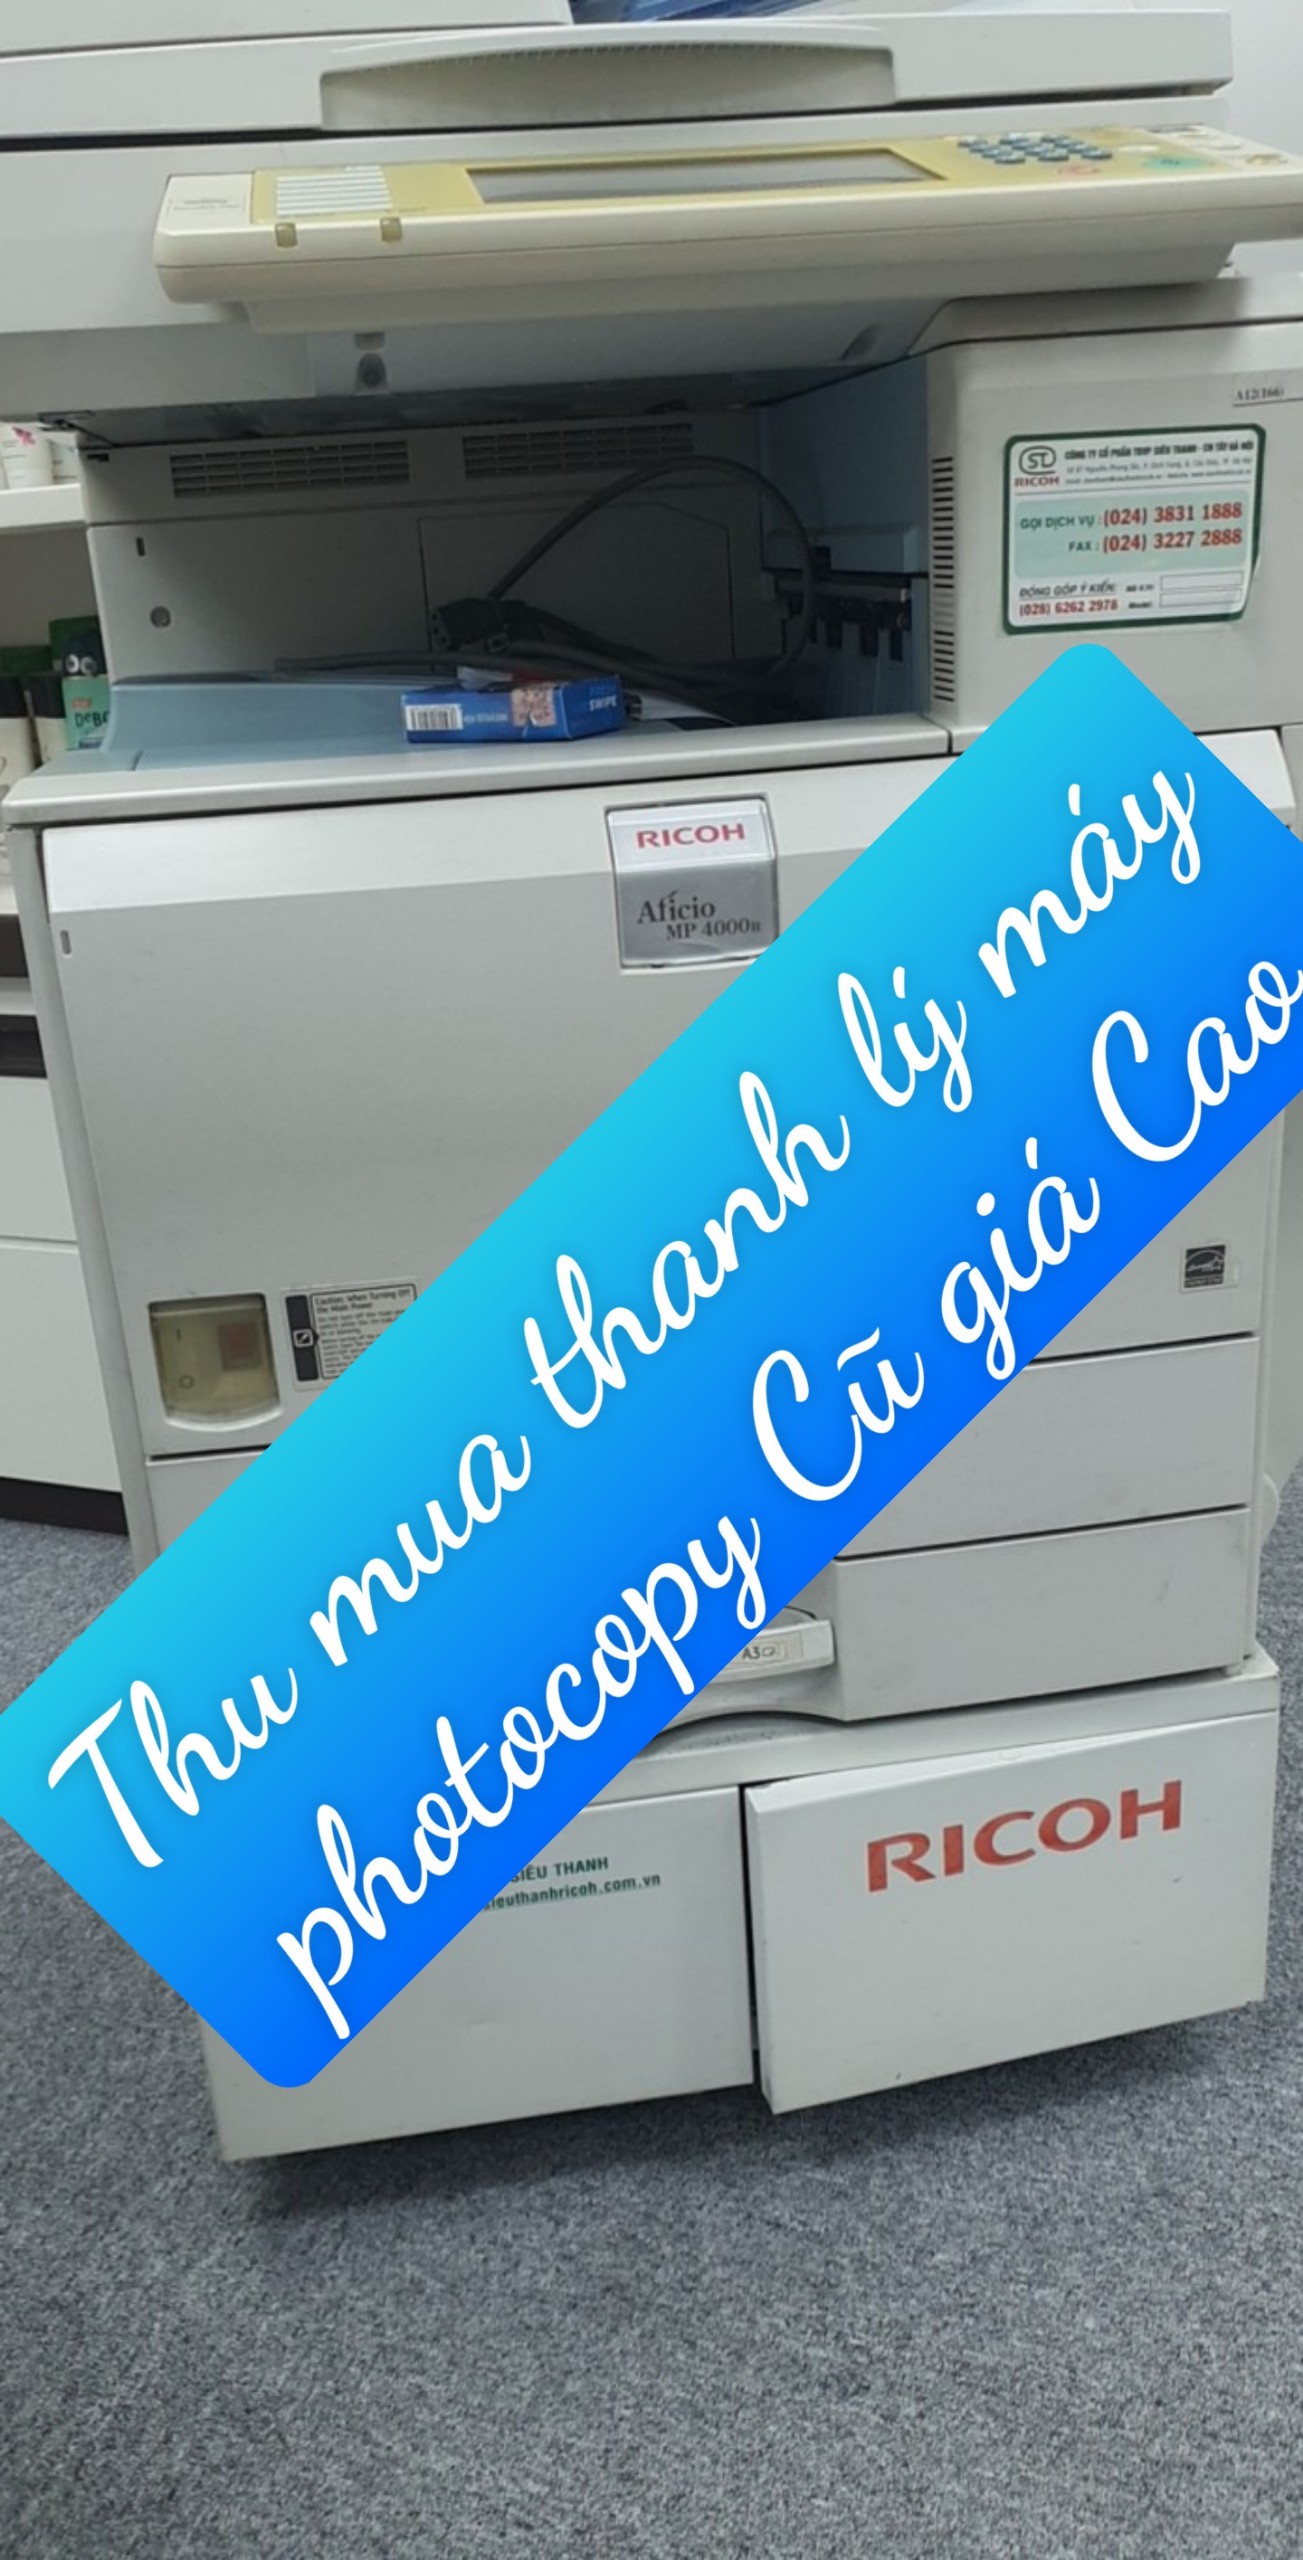 Thu mua thanh lý máy photocopy cũ tại Quận Hoàn Kiếm Hà Nội